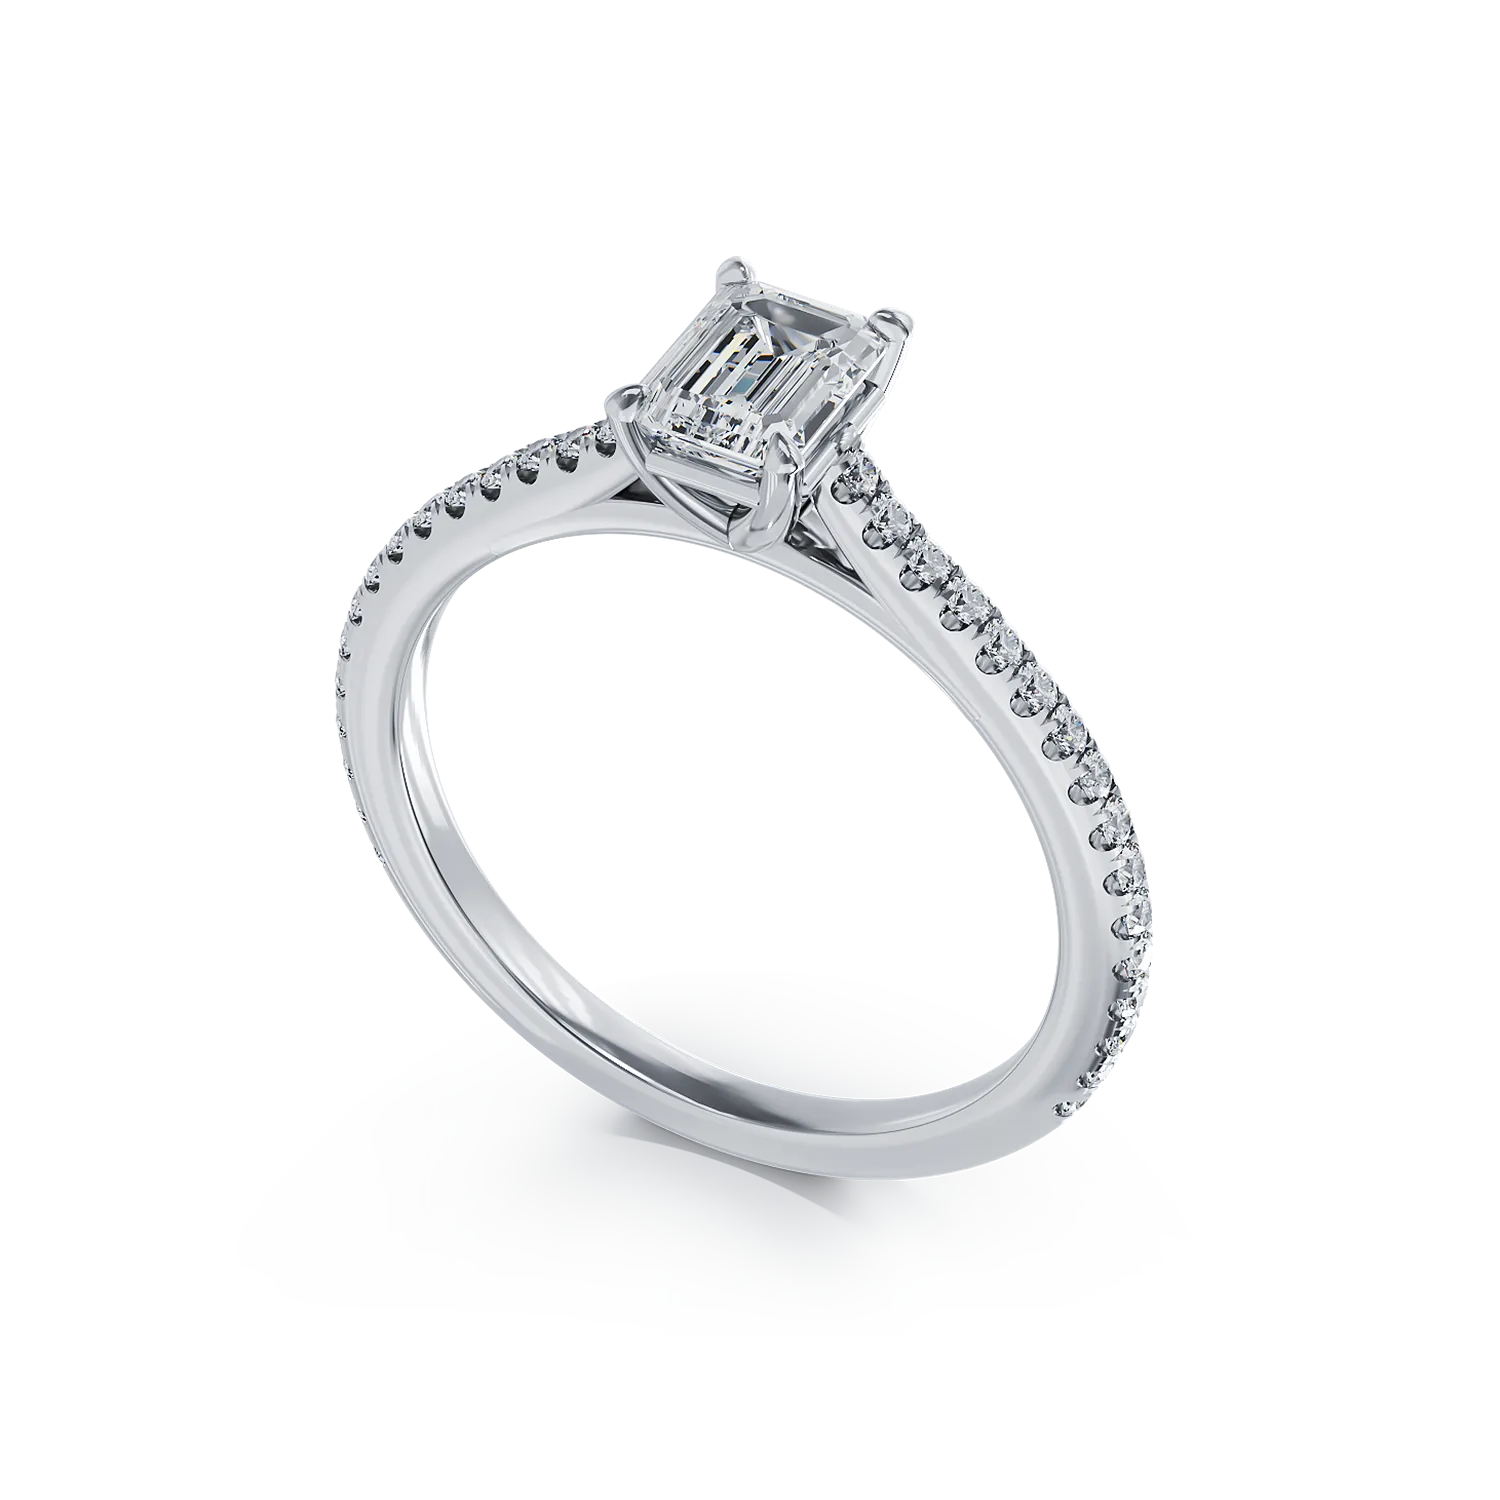 Eljegyzési gyűrű platinából 0.6ct gyémánttal és 0.185ct gyémántokkal